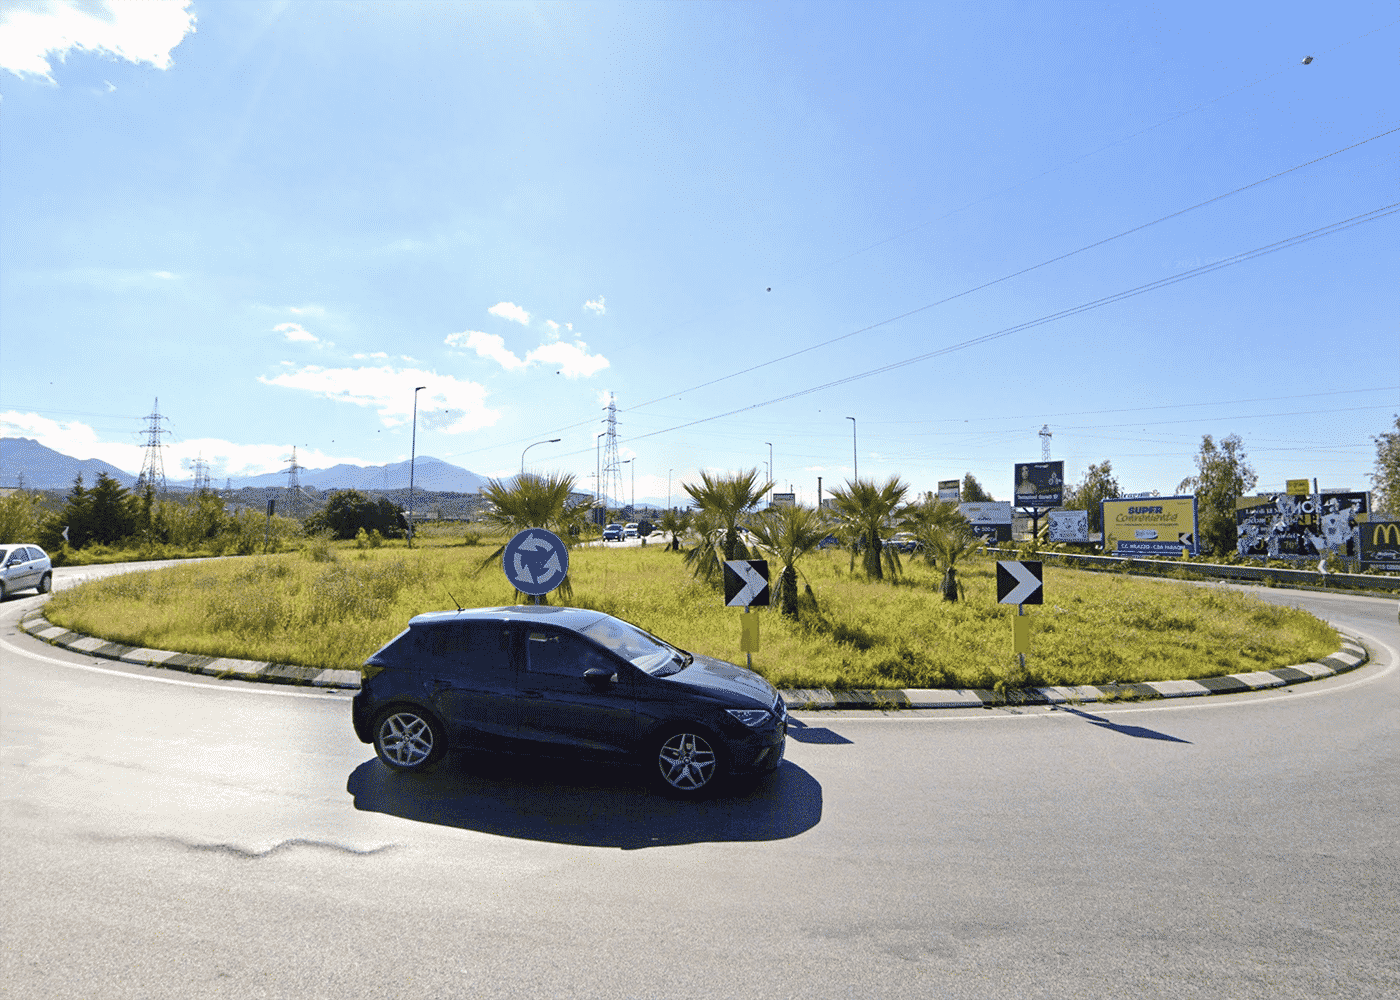 Autostrada A20 Messina-Palermo, disposta la chiusura di uno svincolo